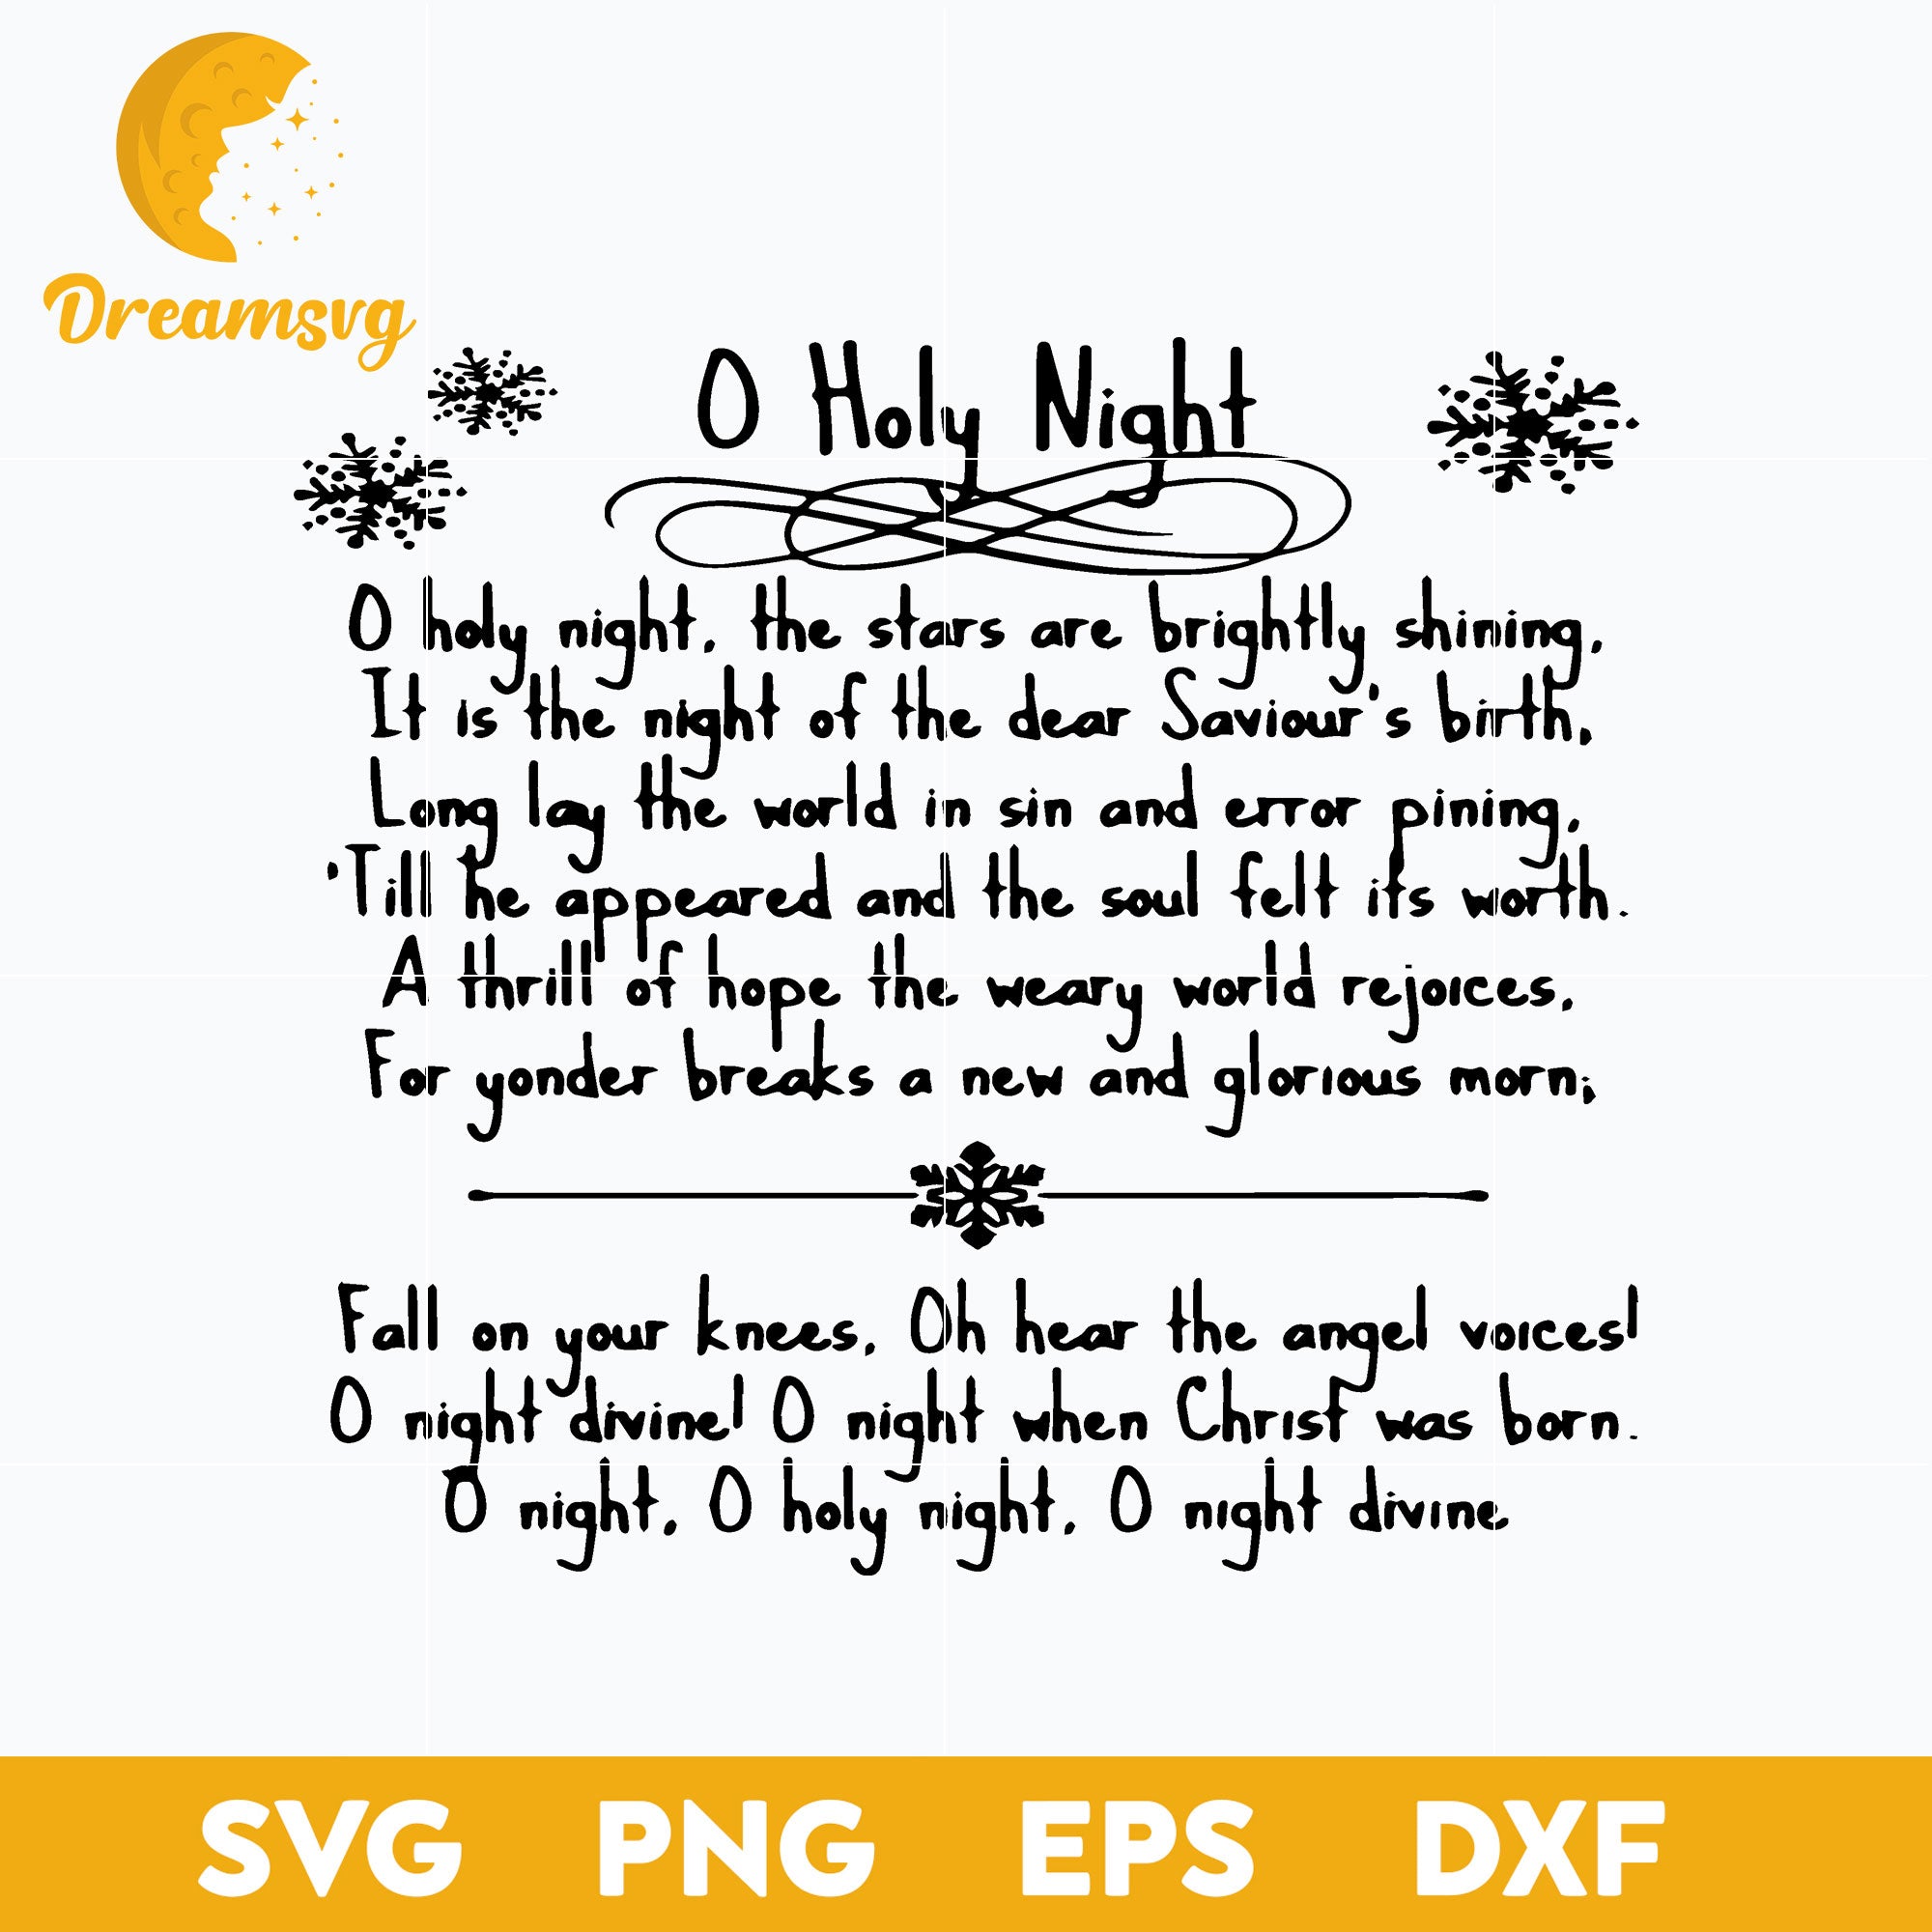 Letra de canción de O Holy Night Christmas Carol Music